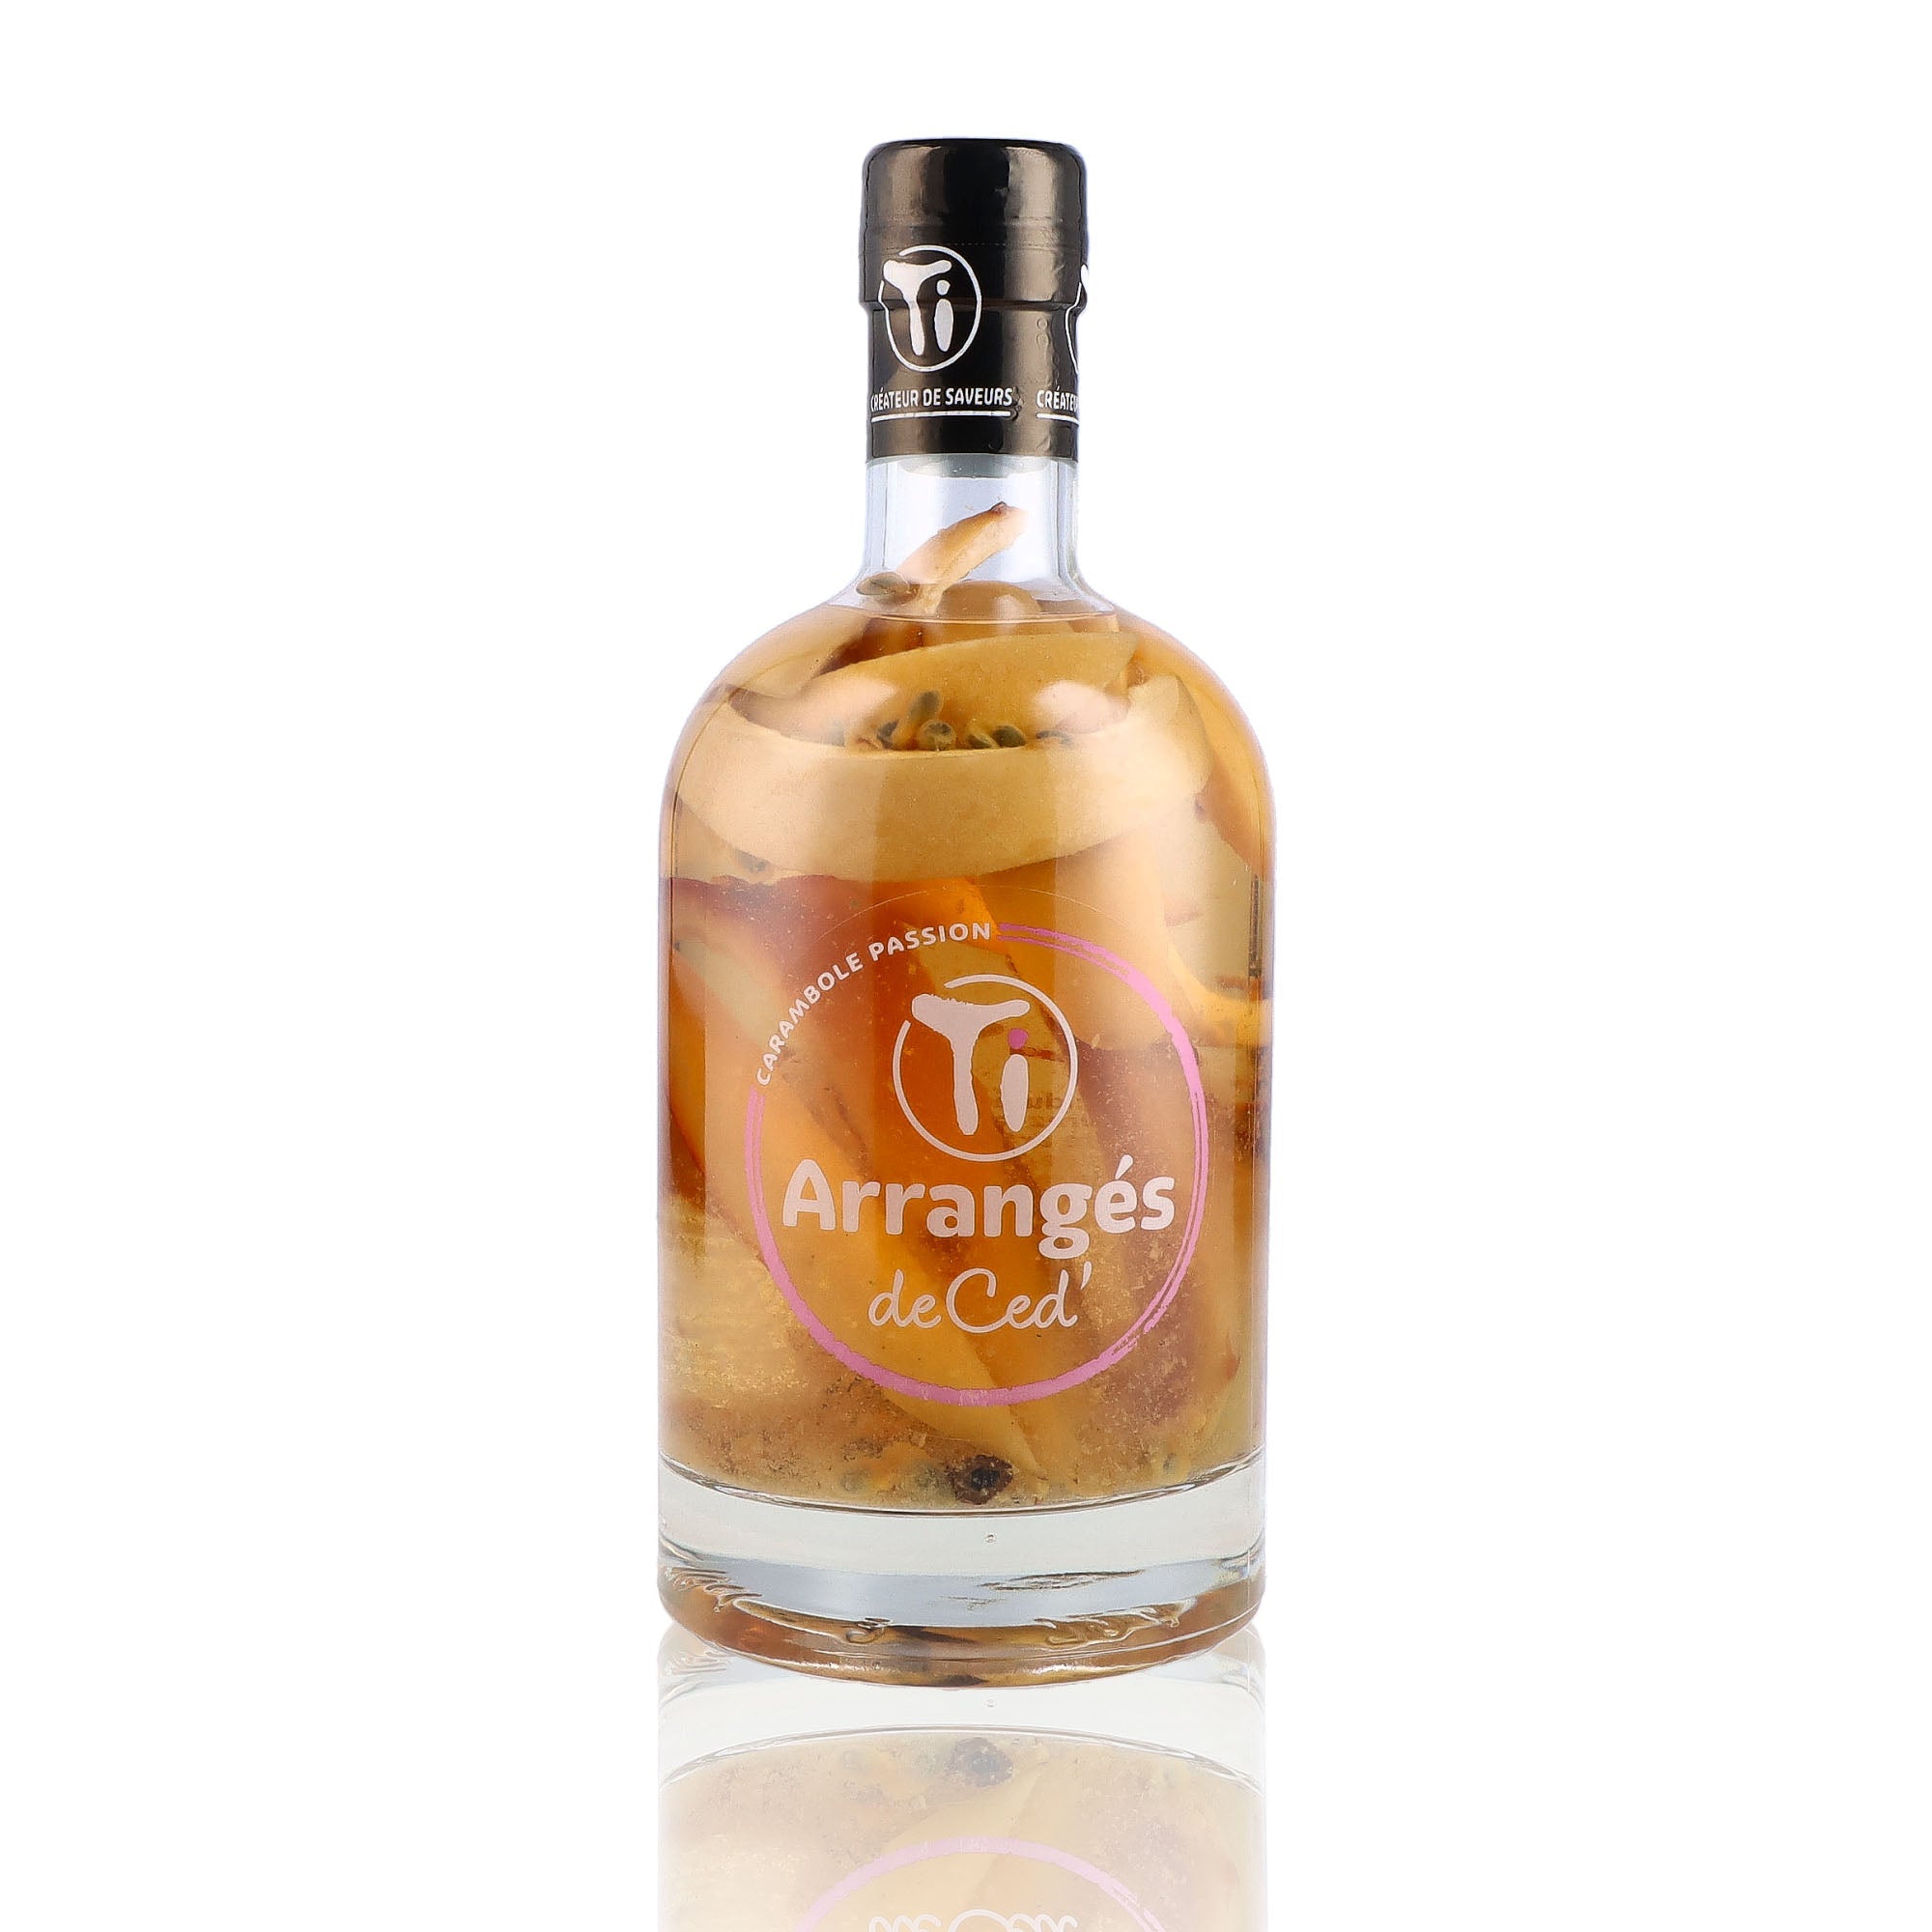 Une bouteille de Rhum Arrangé, de la marque Les Rhums de Ced', nommée TI Arrangés Carambole Passion.